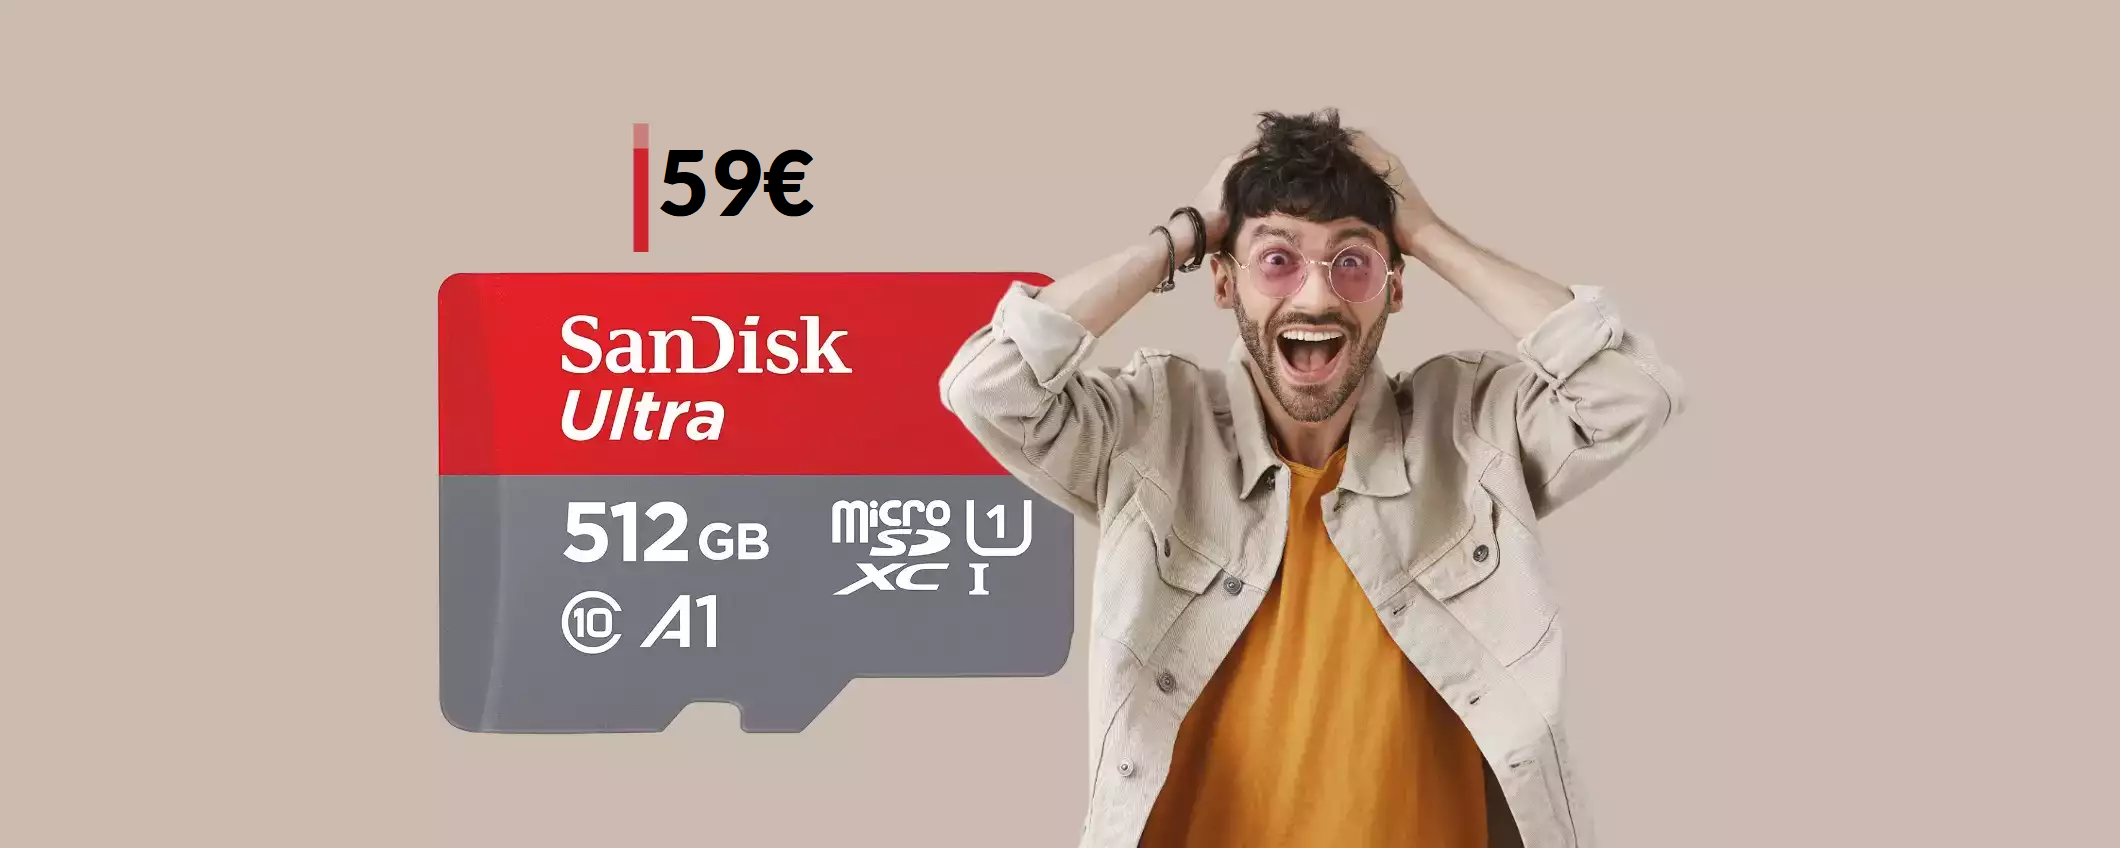 MicroSD 512GB SanDisk: best buy da prendere SUBITO a soli 59€